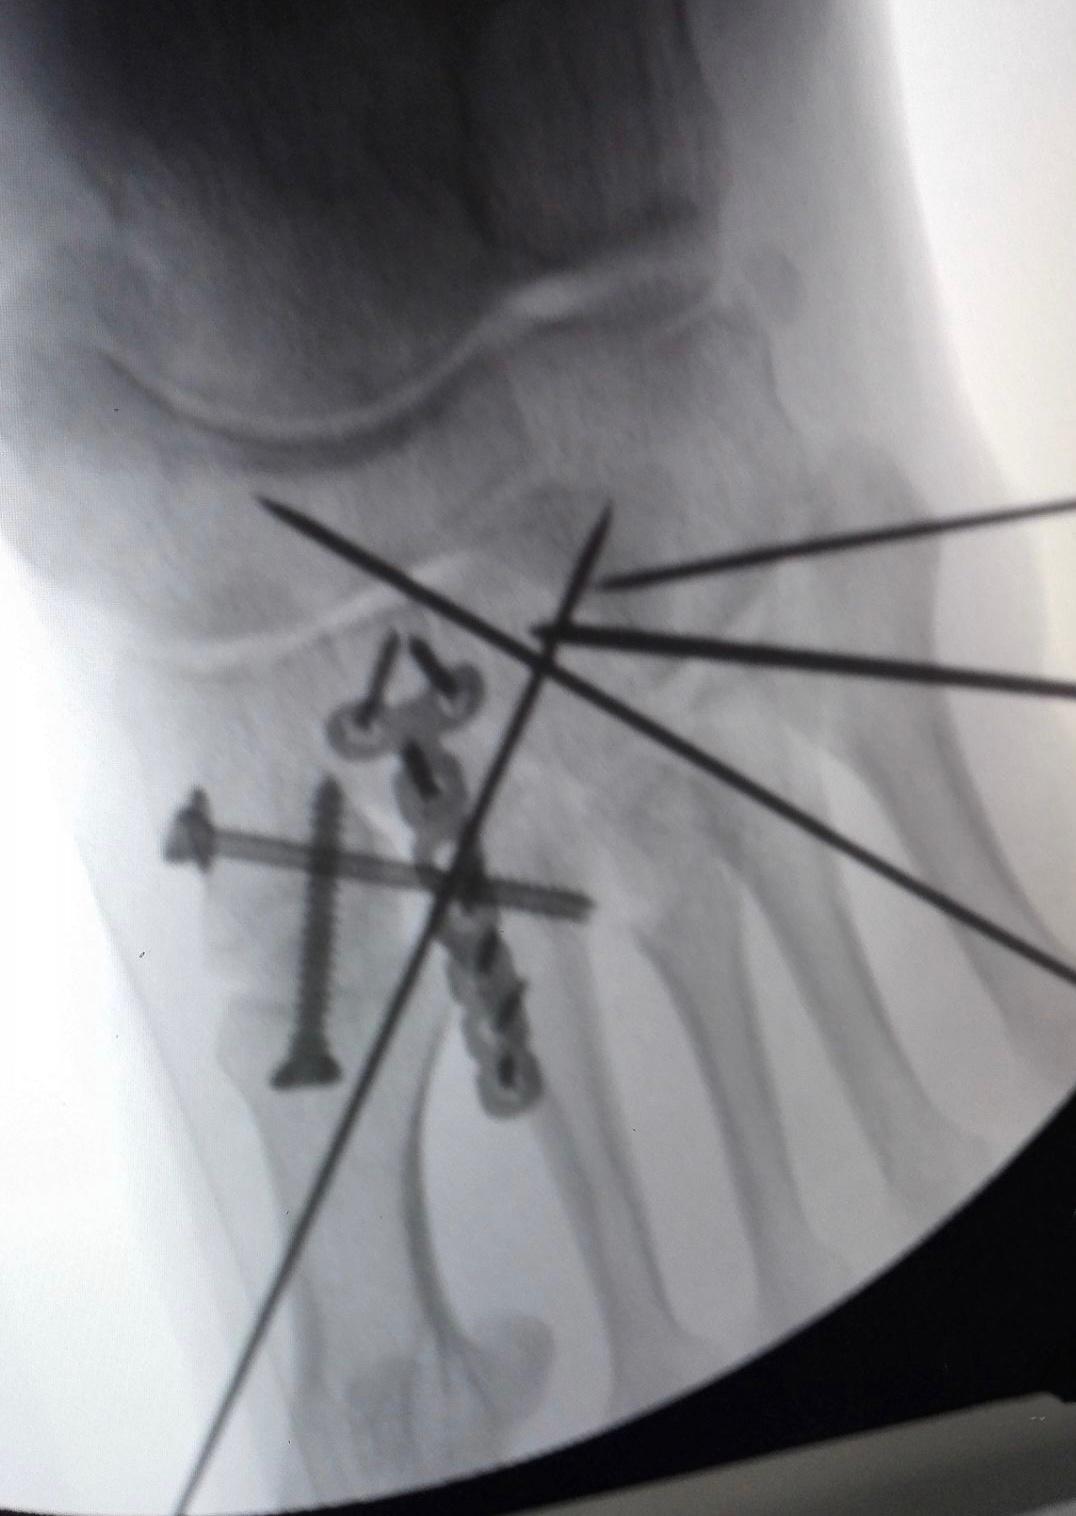 复杂跖跗关节骨折脱位手术分享